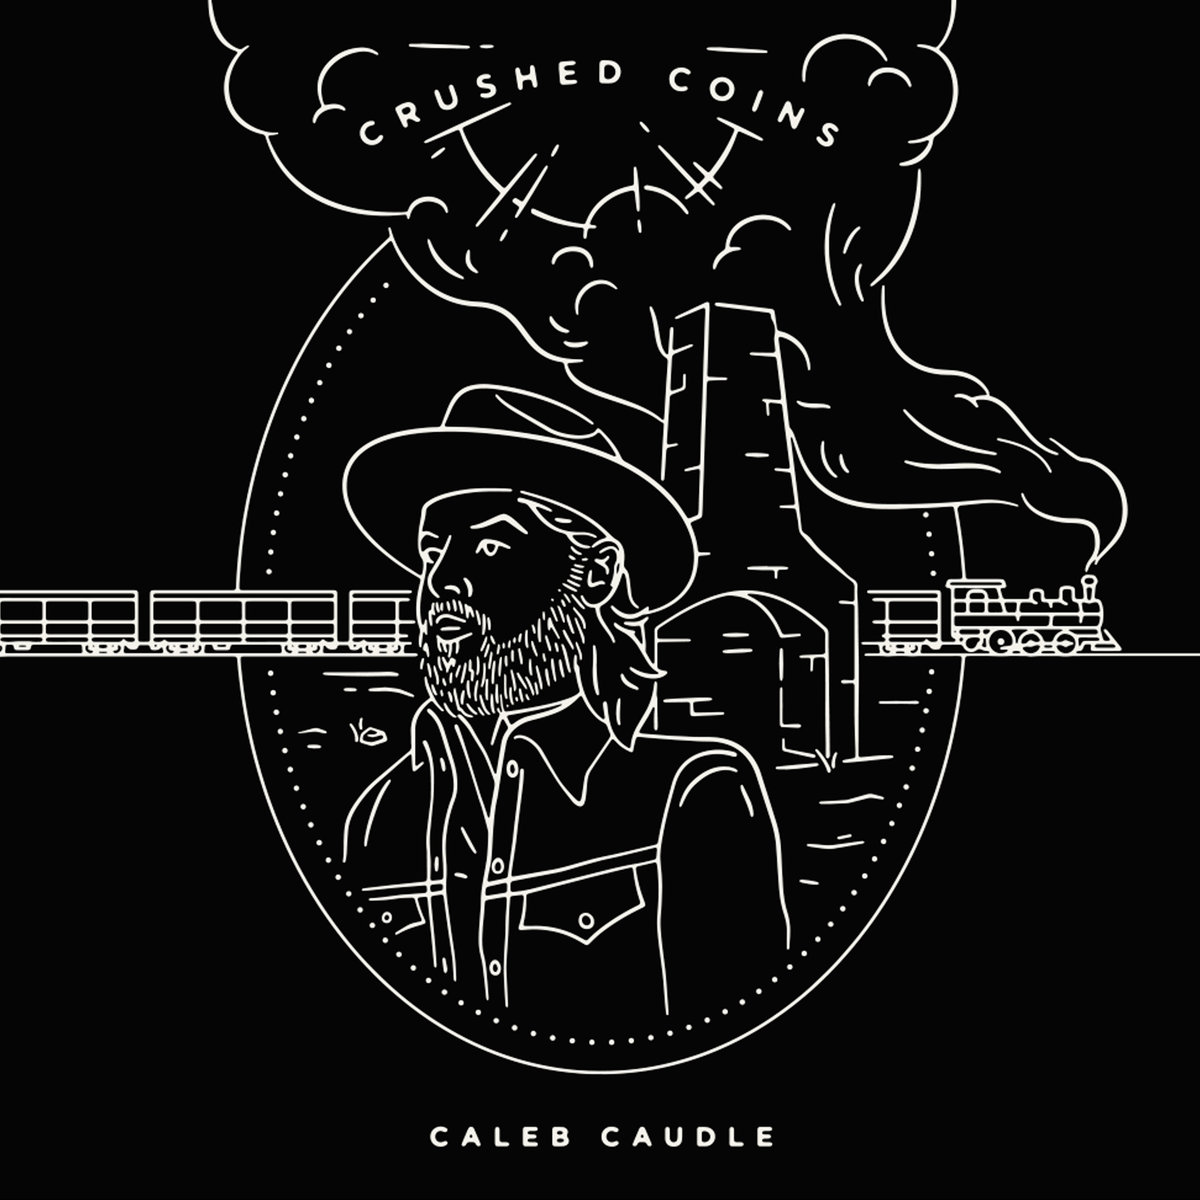 Caleb Caudle - cover art